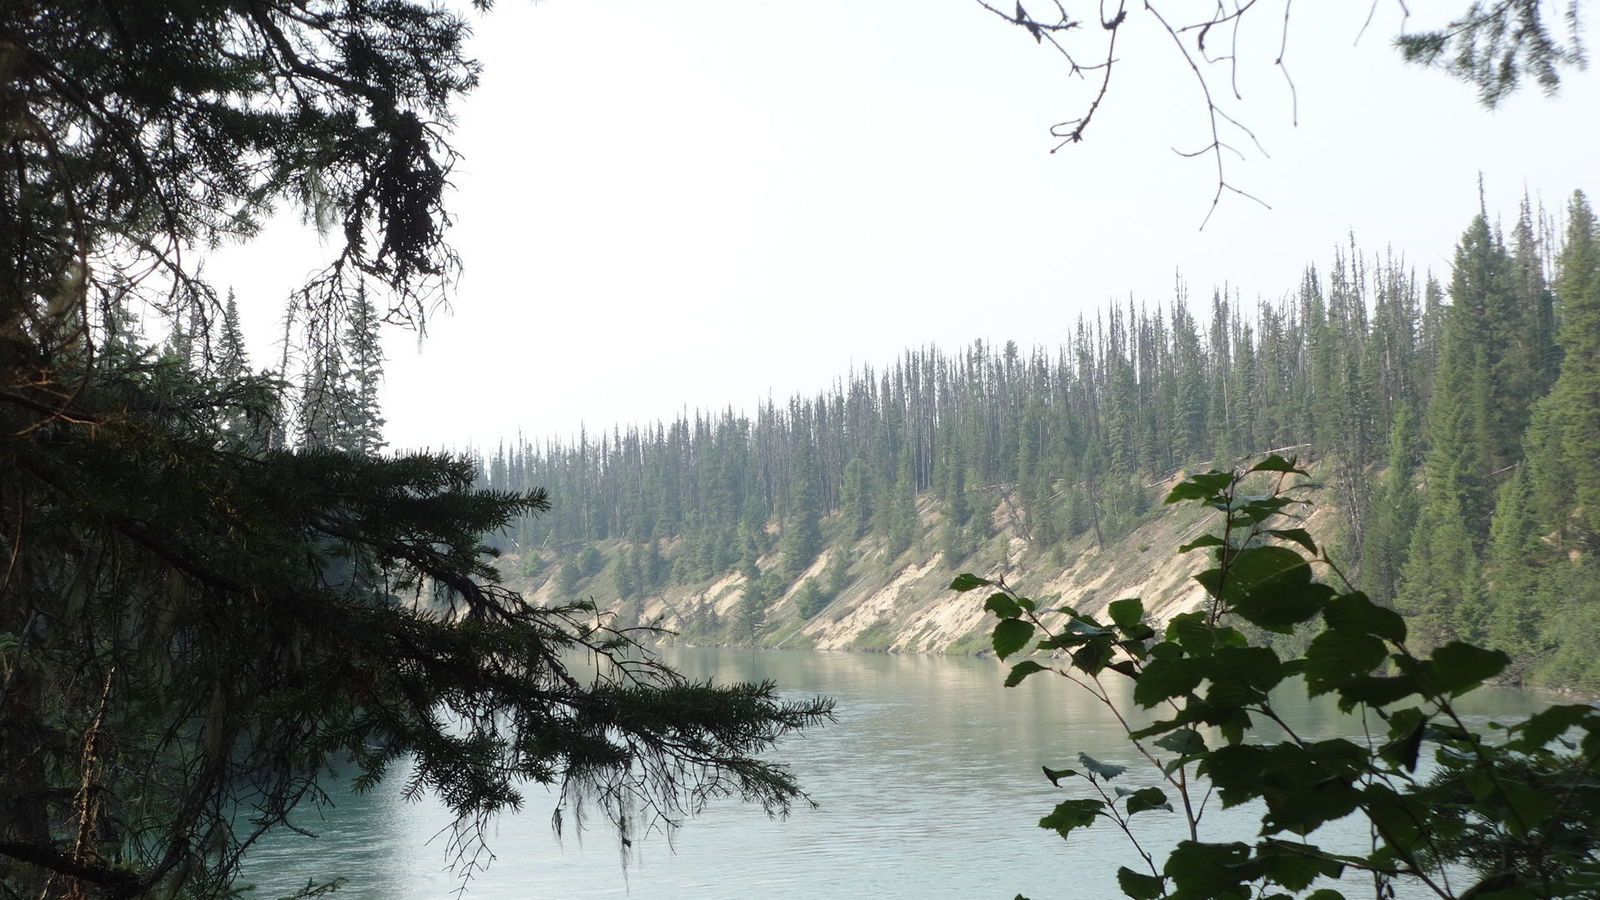 Cariboo River